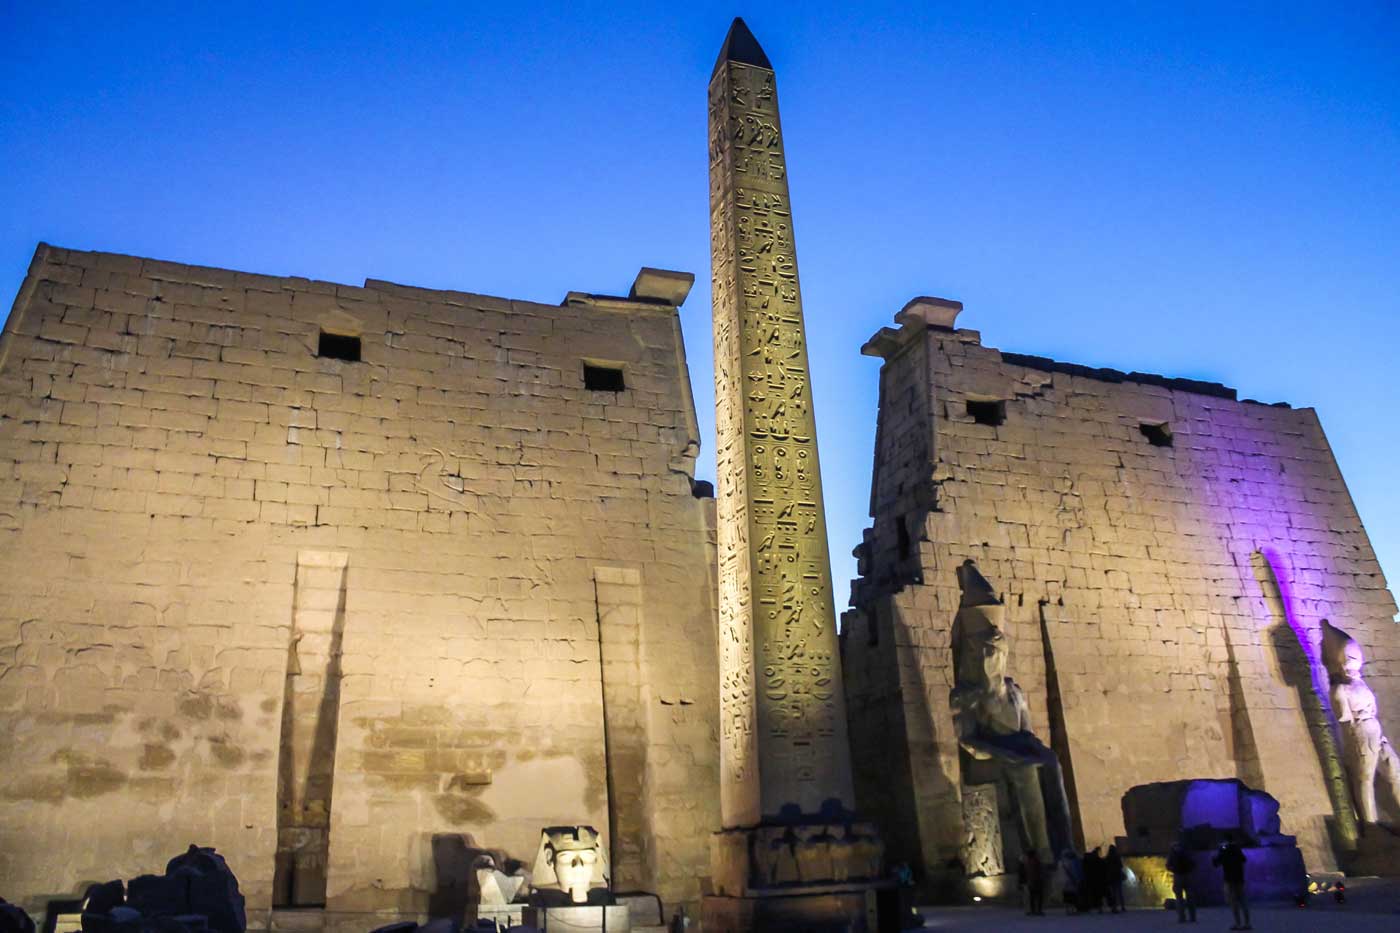 Entrada do Templo de Luxor à noite